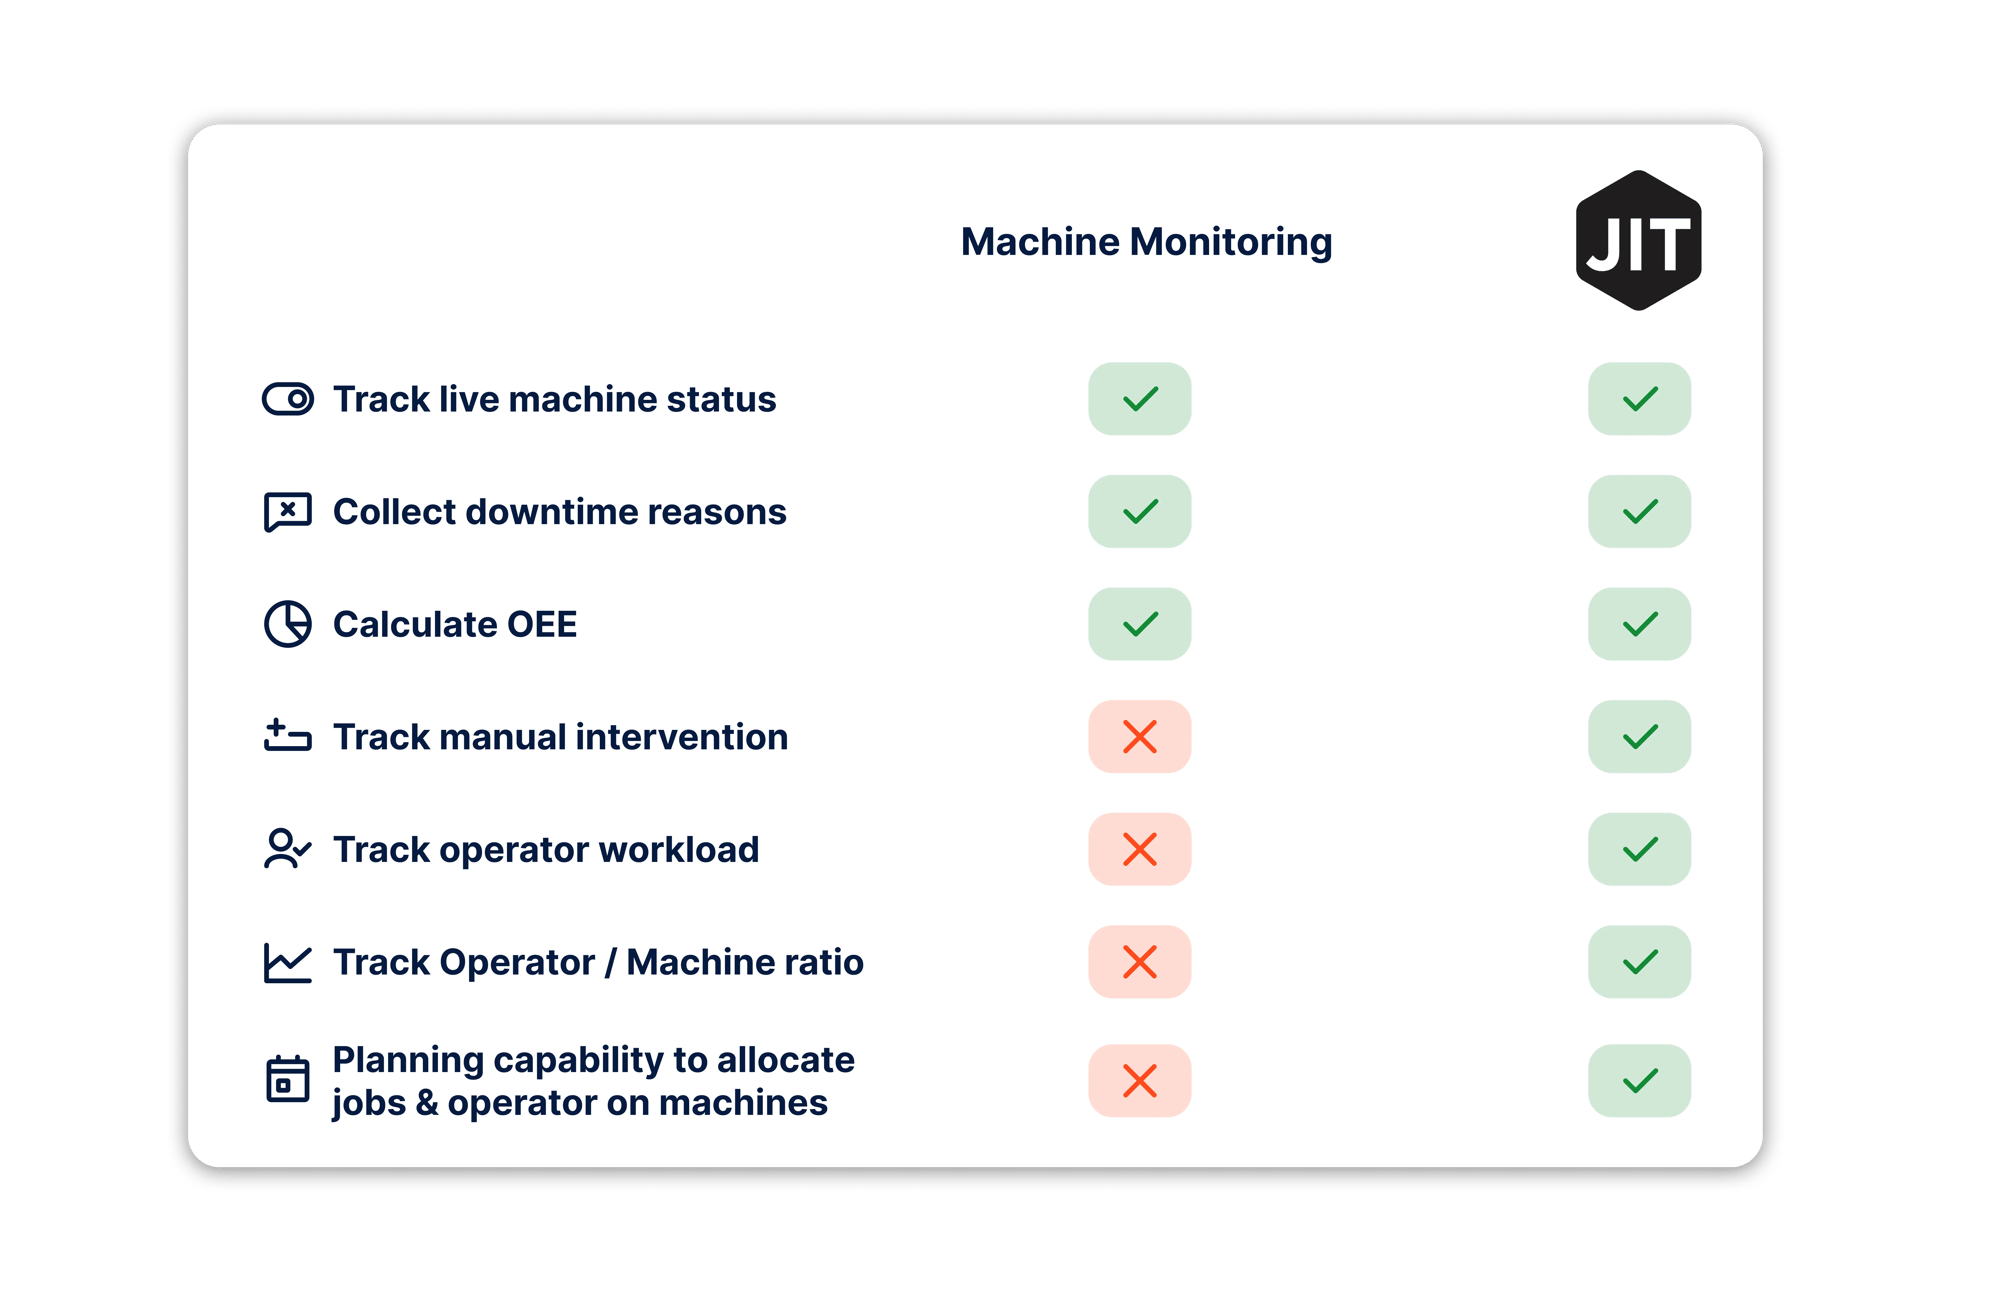 Tableau comparatif entre les systèmes de Machine Monitoring et JITbase. JITbase dispose de fonctionnalités supplémentaires de planification et de gestion de la main d'oeuvre